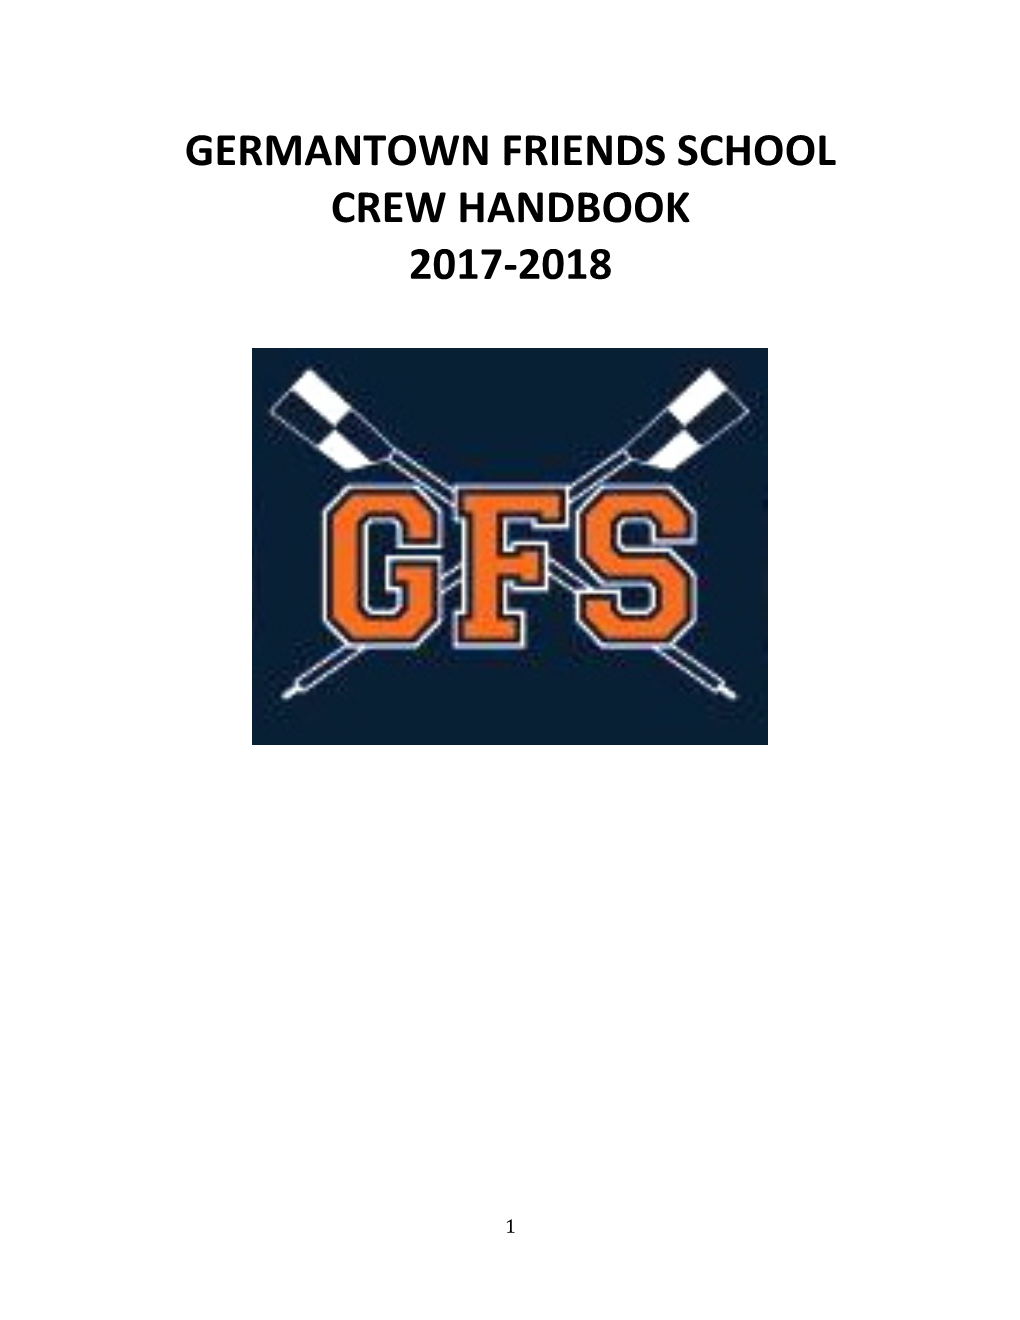 Germantown Friends School Crew Handbook 2017-2018